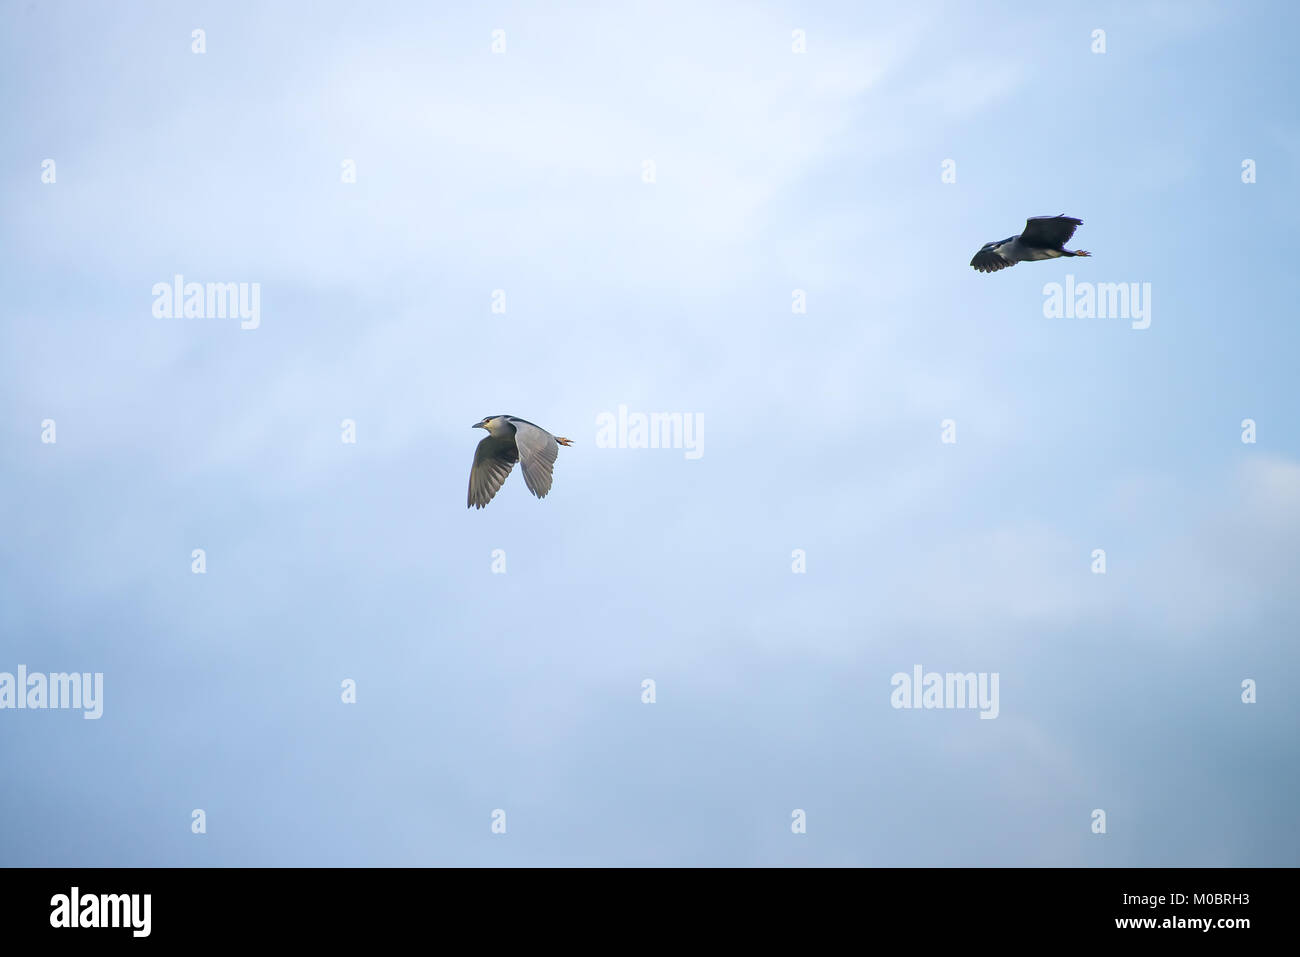 Incoronato nero uccello vola ad alta quota con cielo blu come sfondo Foto Stock